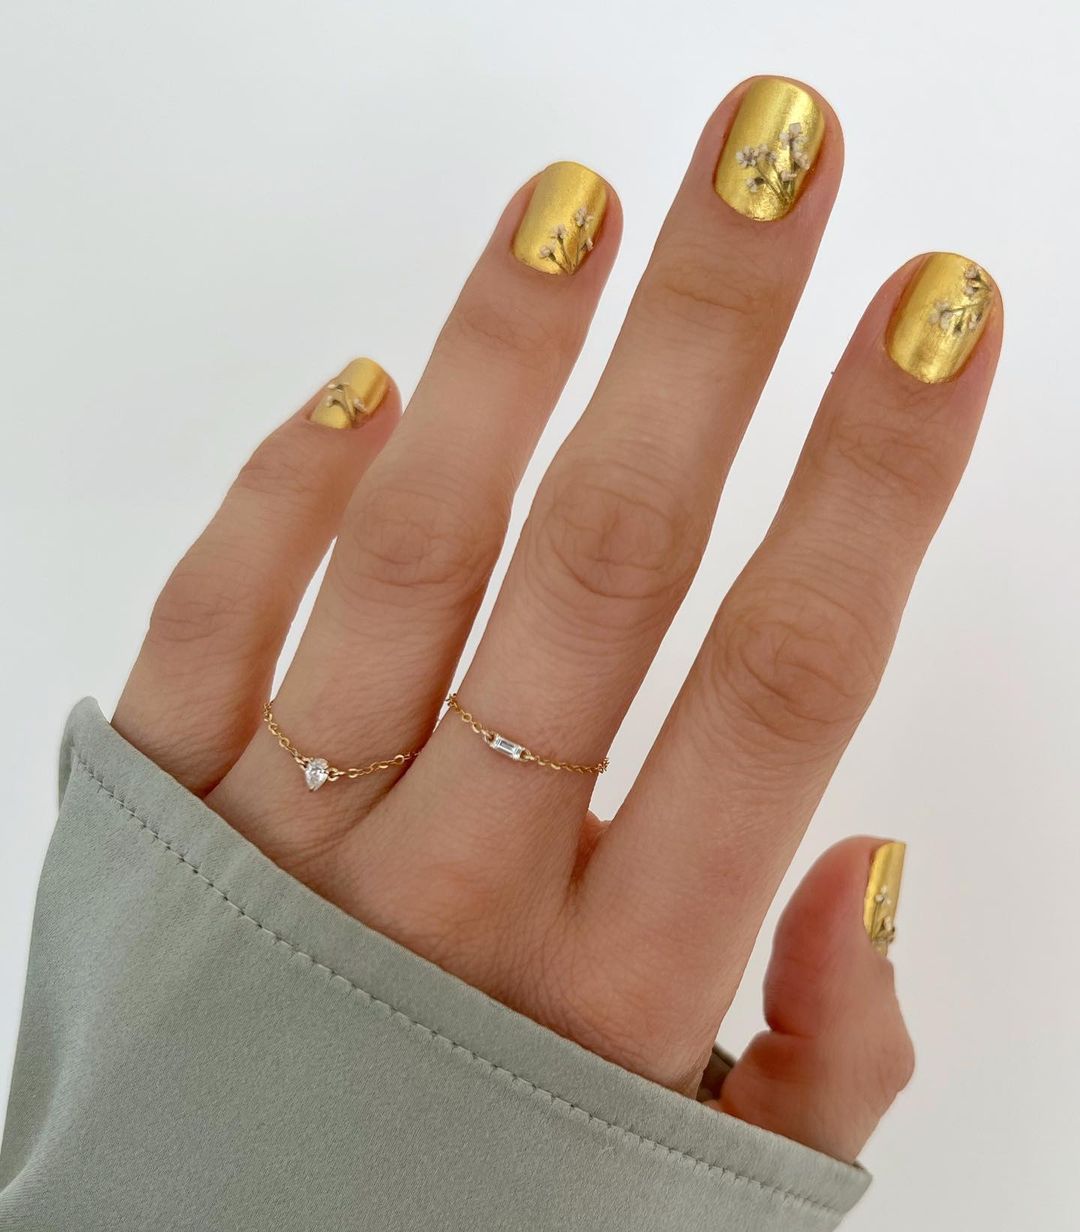 Manicure 2022: Δυο νέα trends στα νύχια από την Betina Goldstein